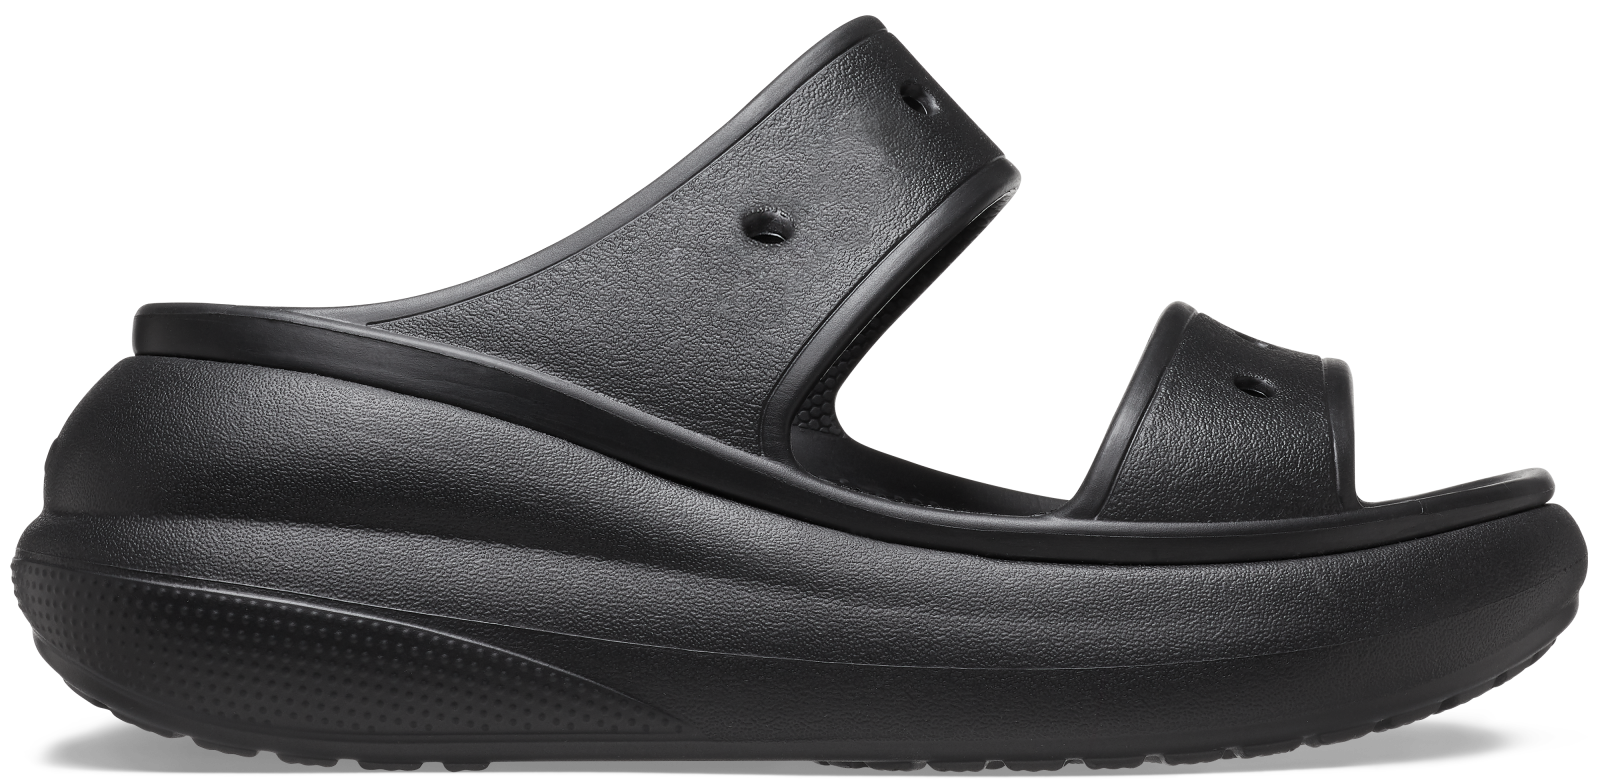 Dámské sandále crocs classic crush černá 37-38